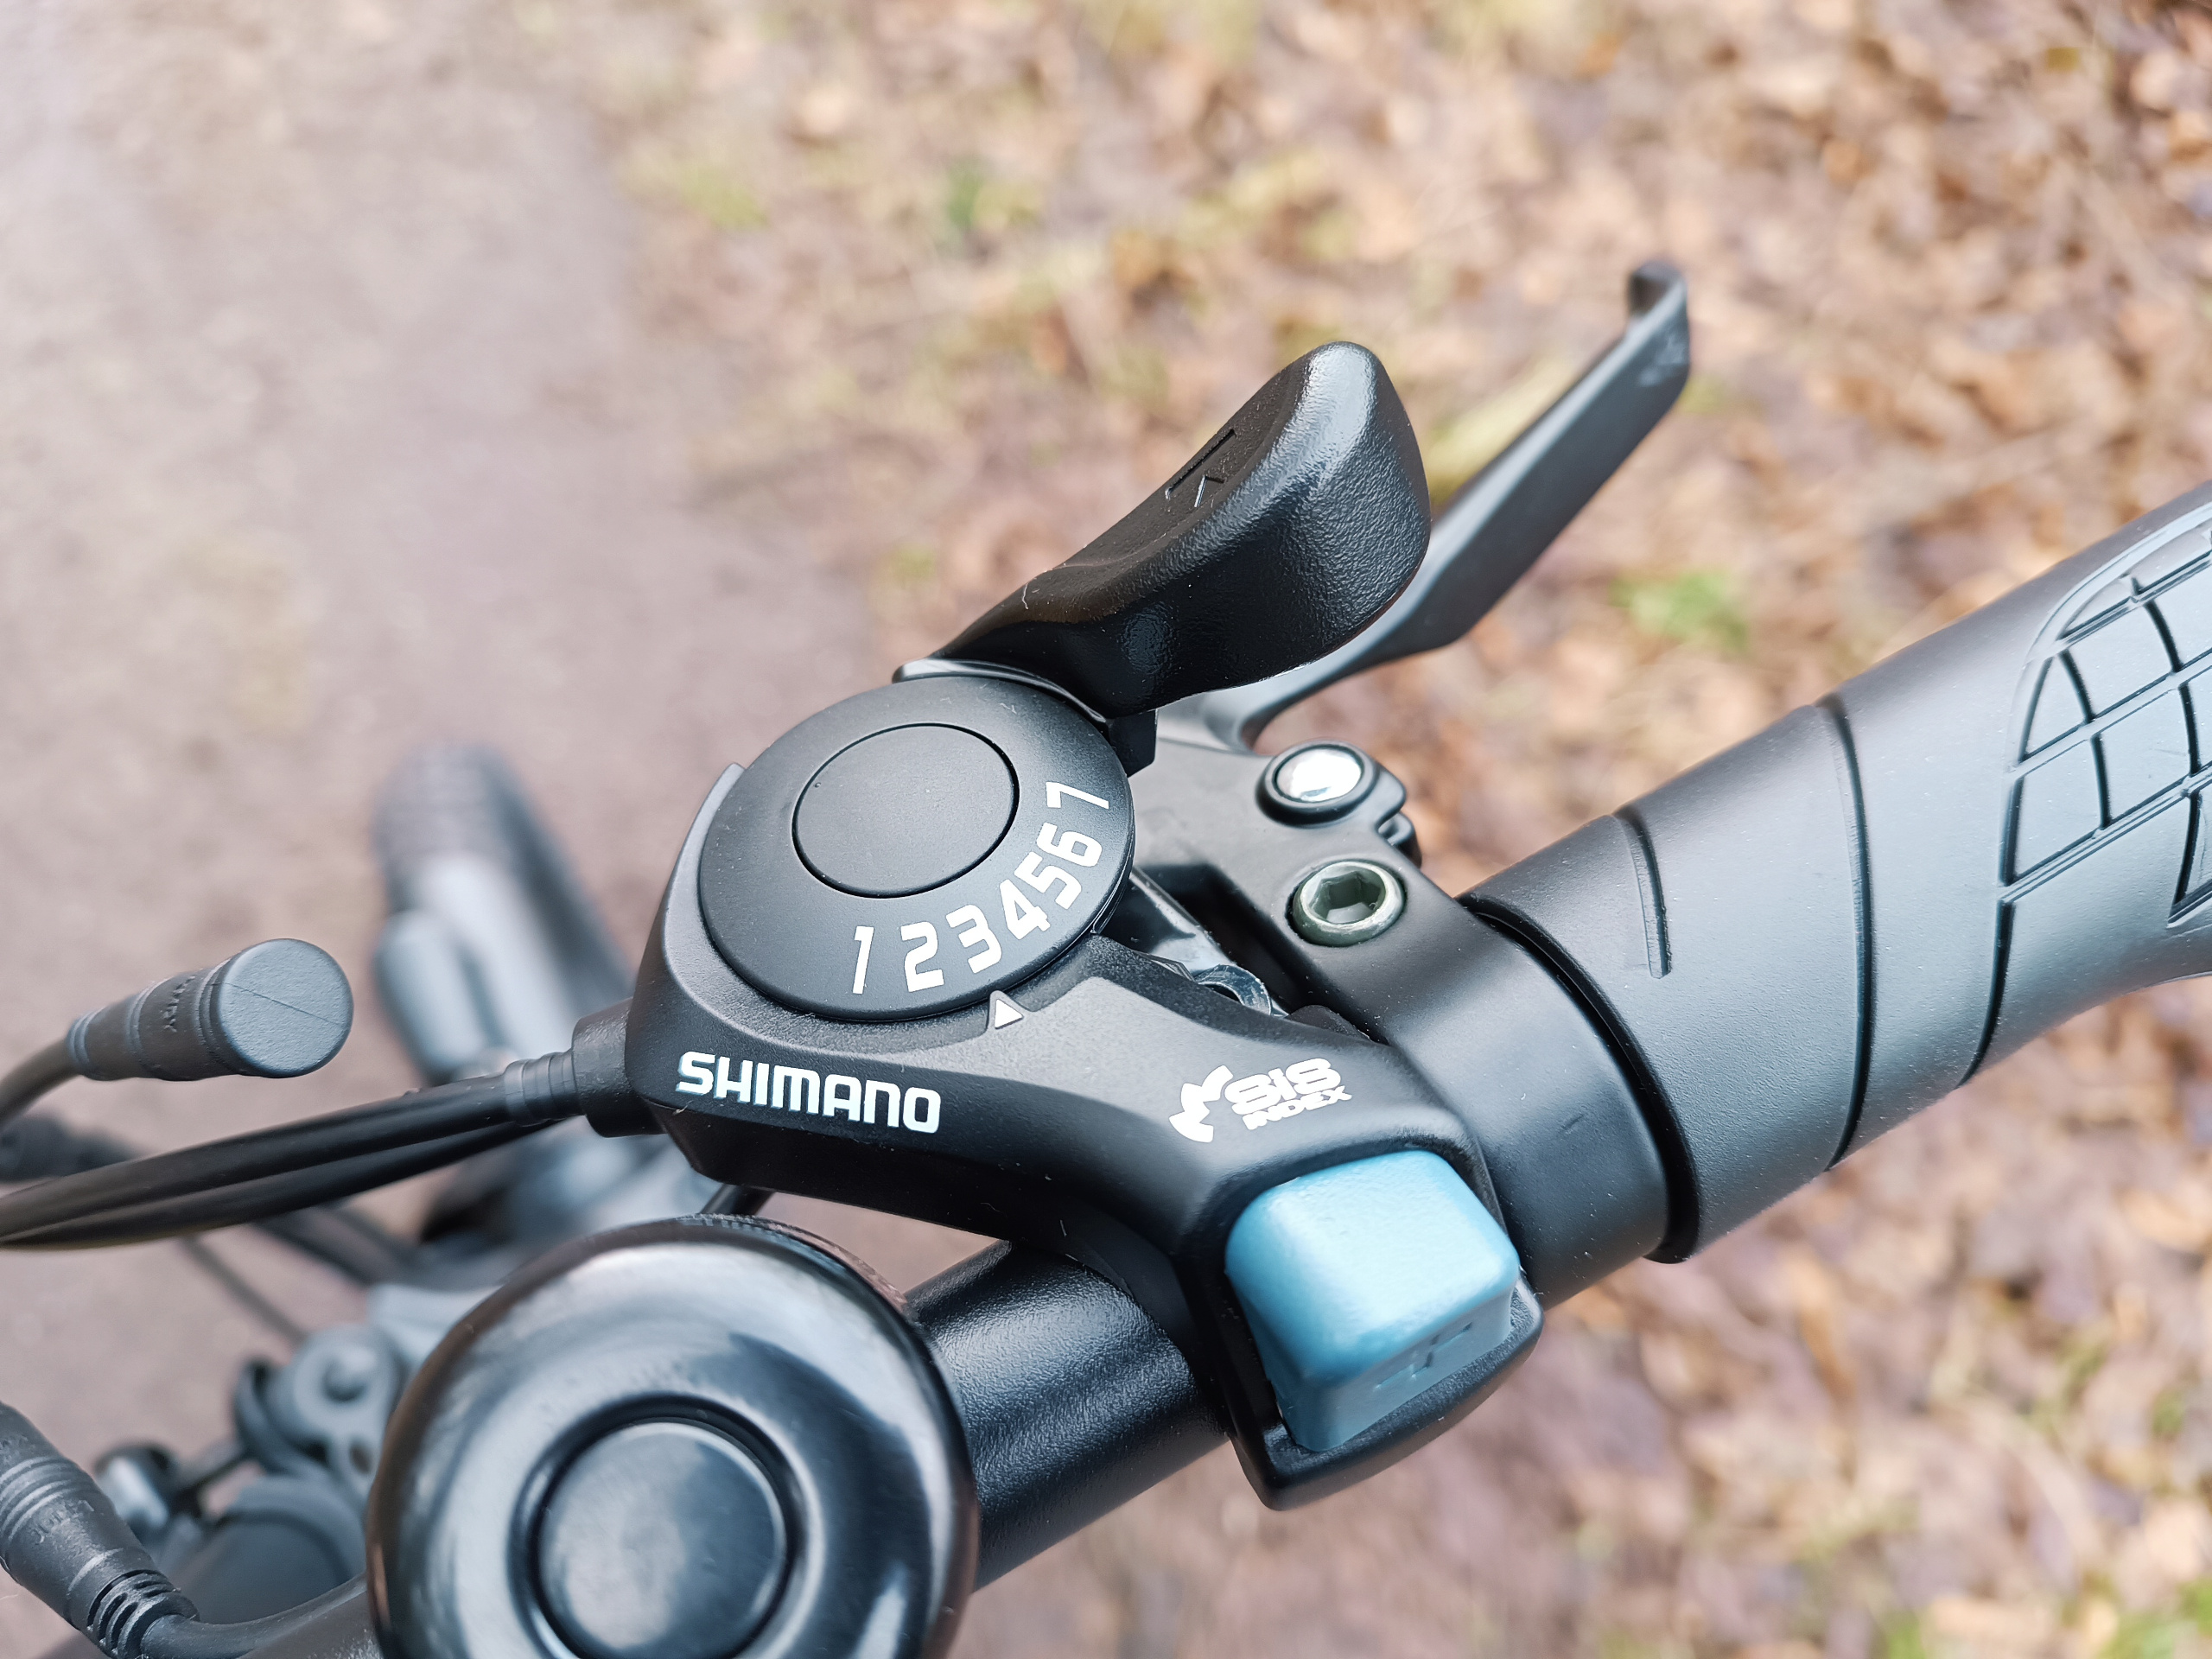 Die Shimano 7-Gang Schaltung schaltet unauffällig und zuverlässig | Quelle: ebiketester24.de